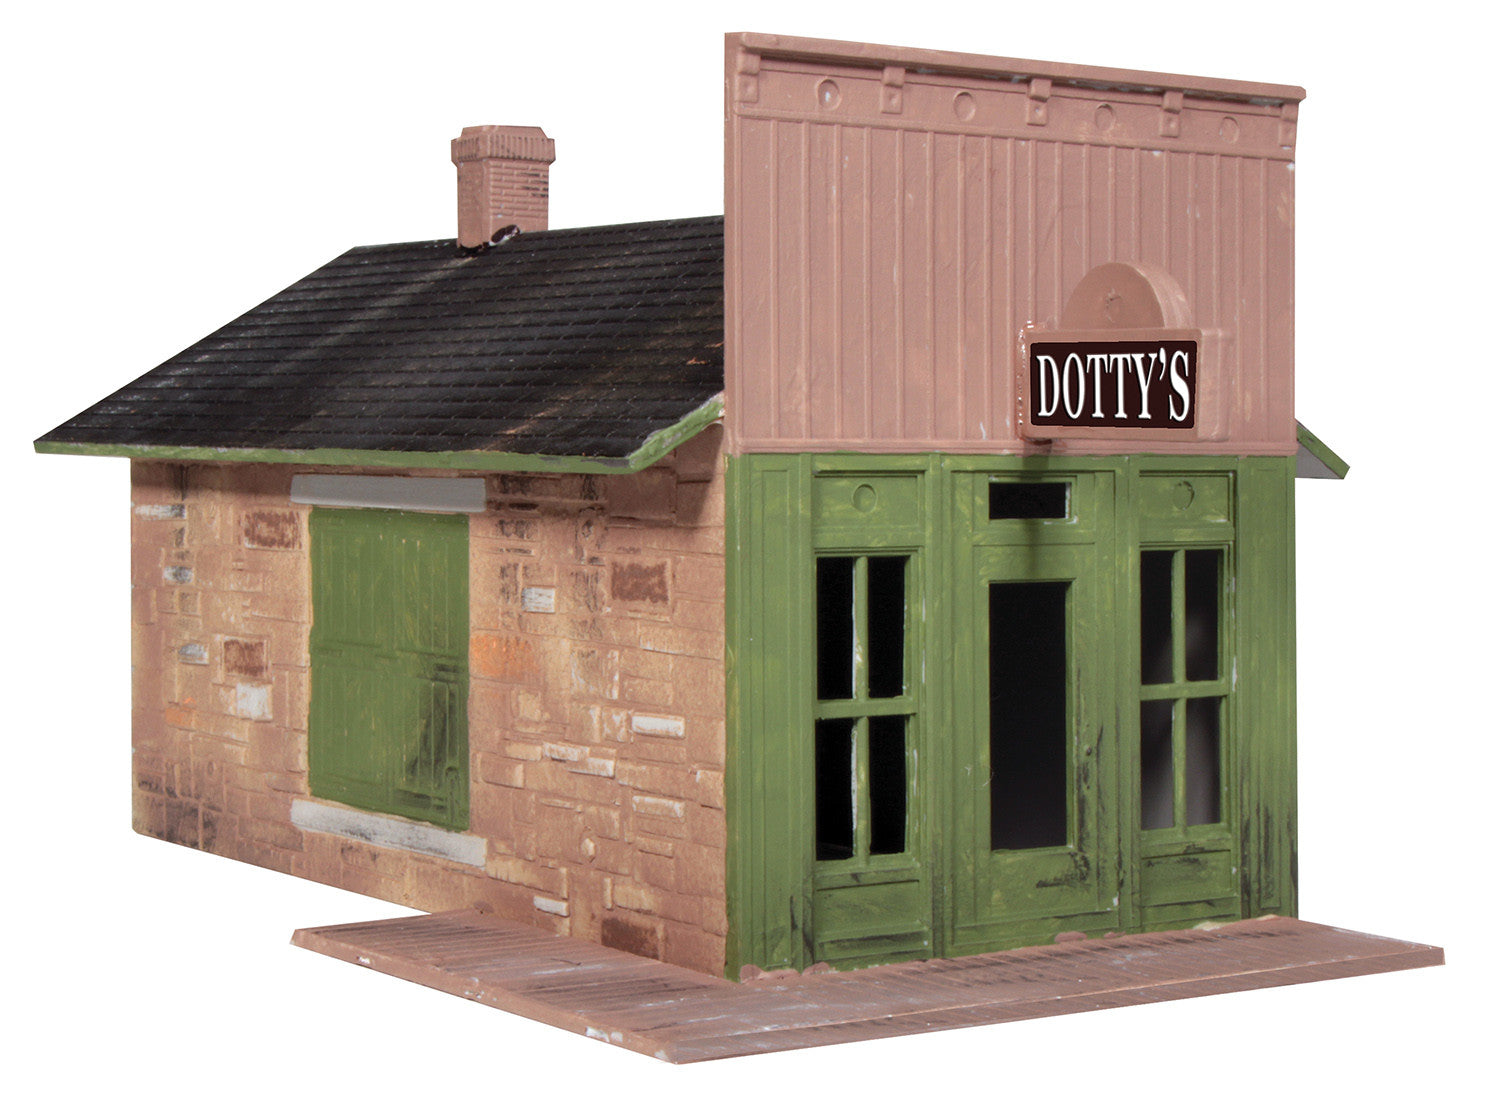 Ameri-Towne #502 - Dotty's Store Kit